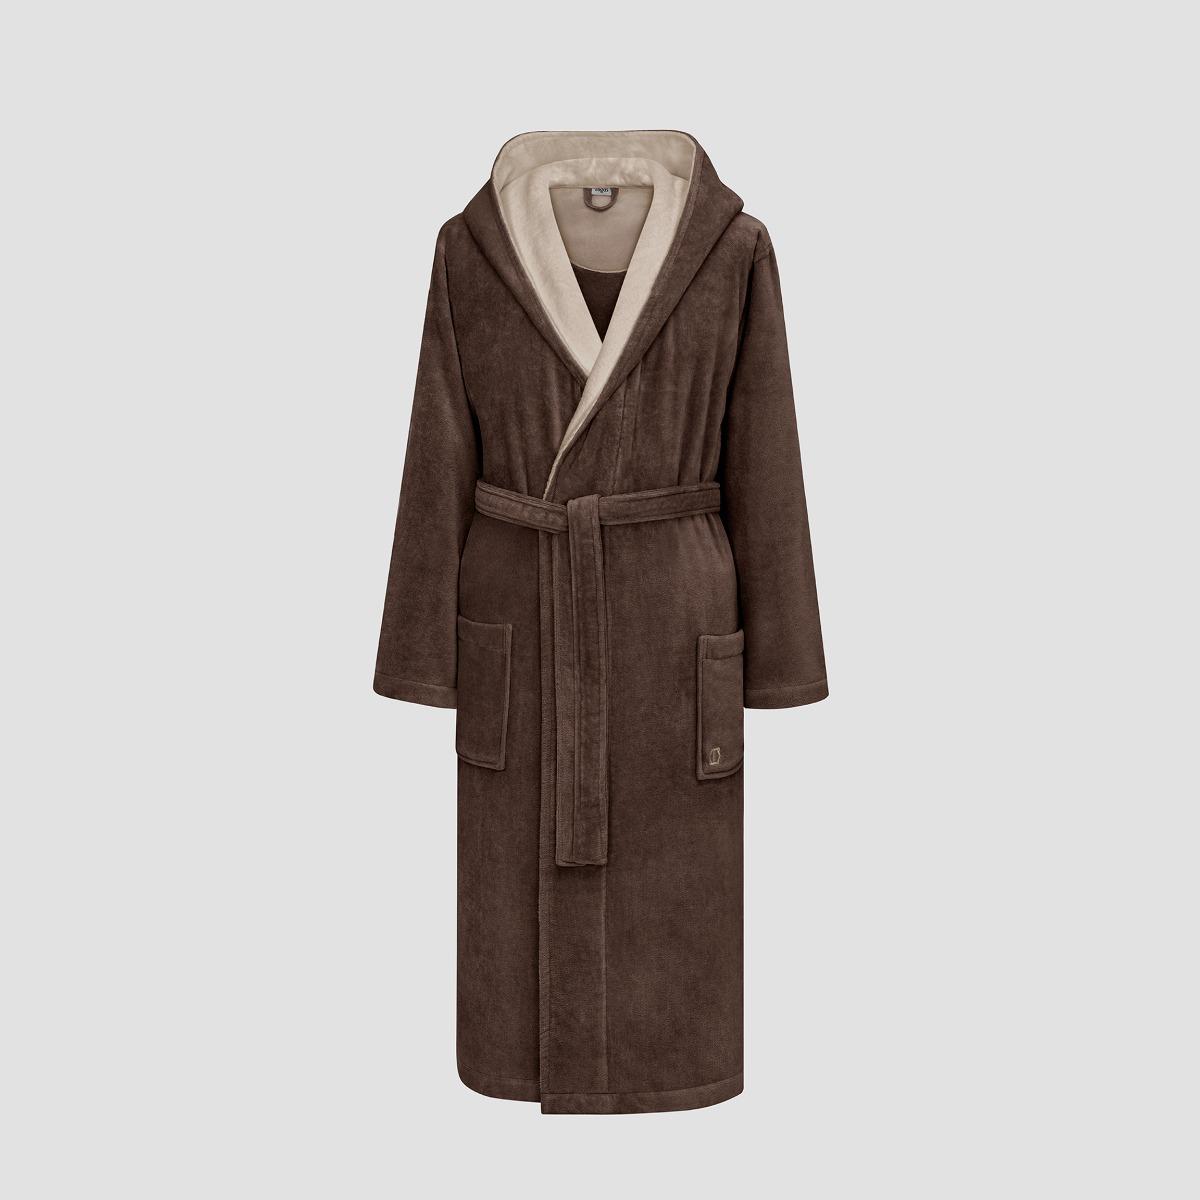 Халат Togas Арт Лайн коричневый с бежевым M(48) халат togas арт лайн серый с белым м 48